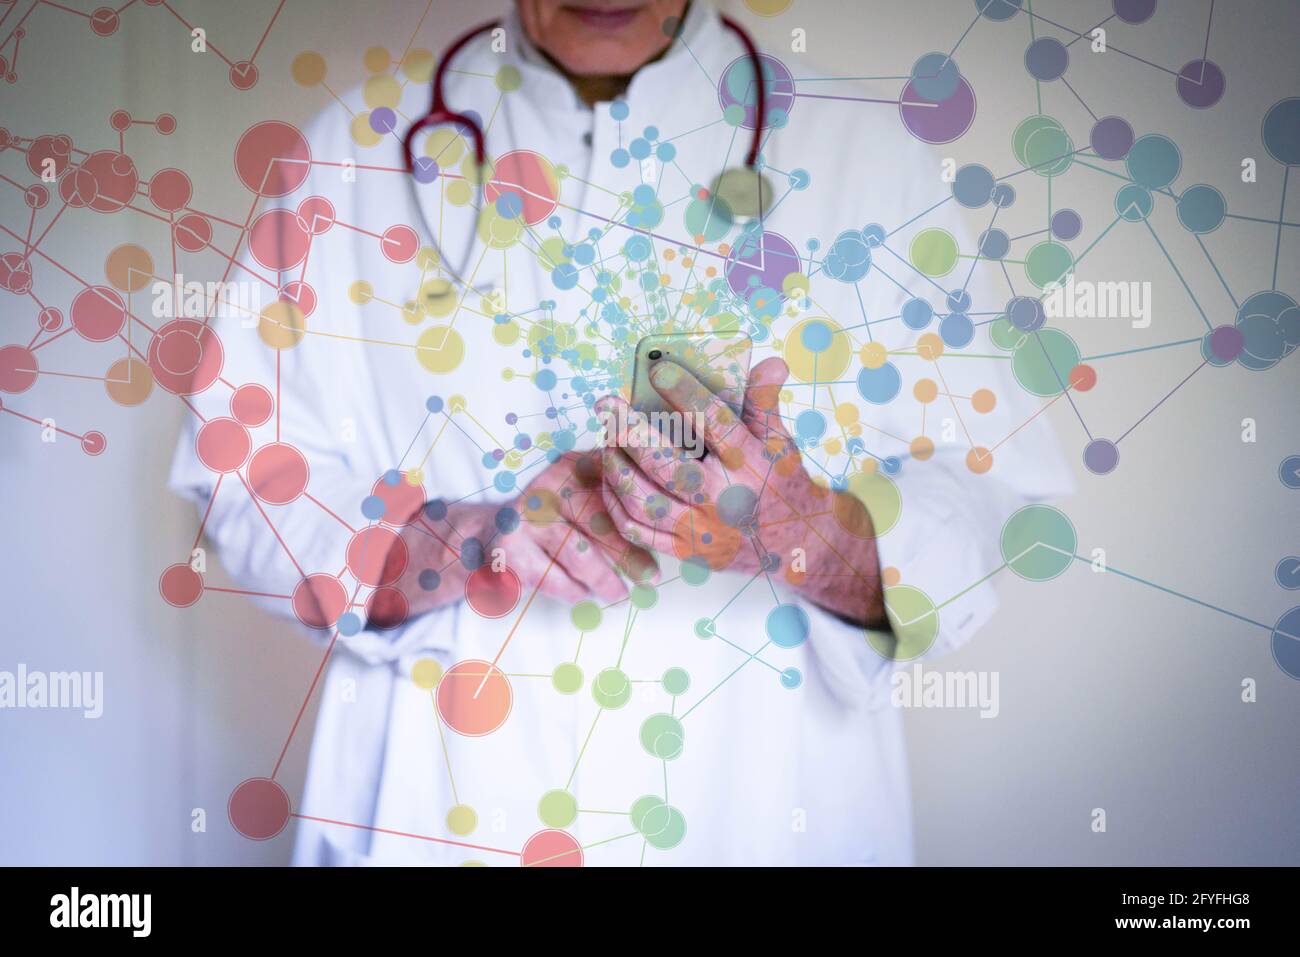 Imagen conceptual de la red y del médico. Foto de stock